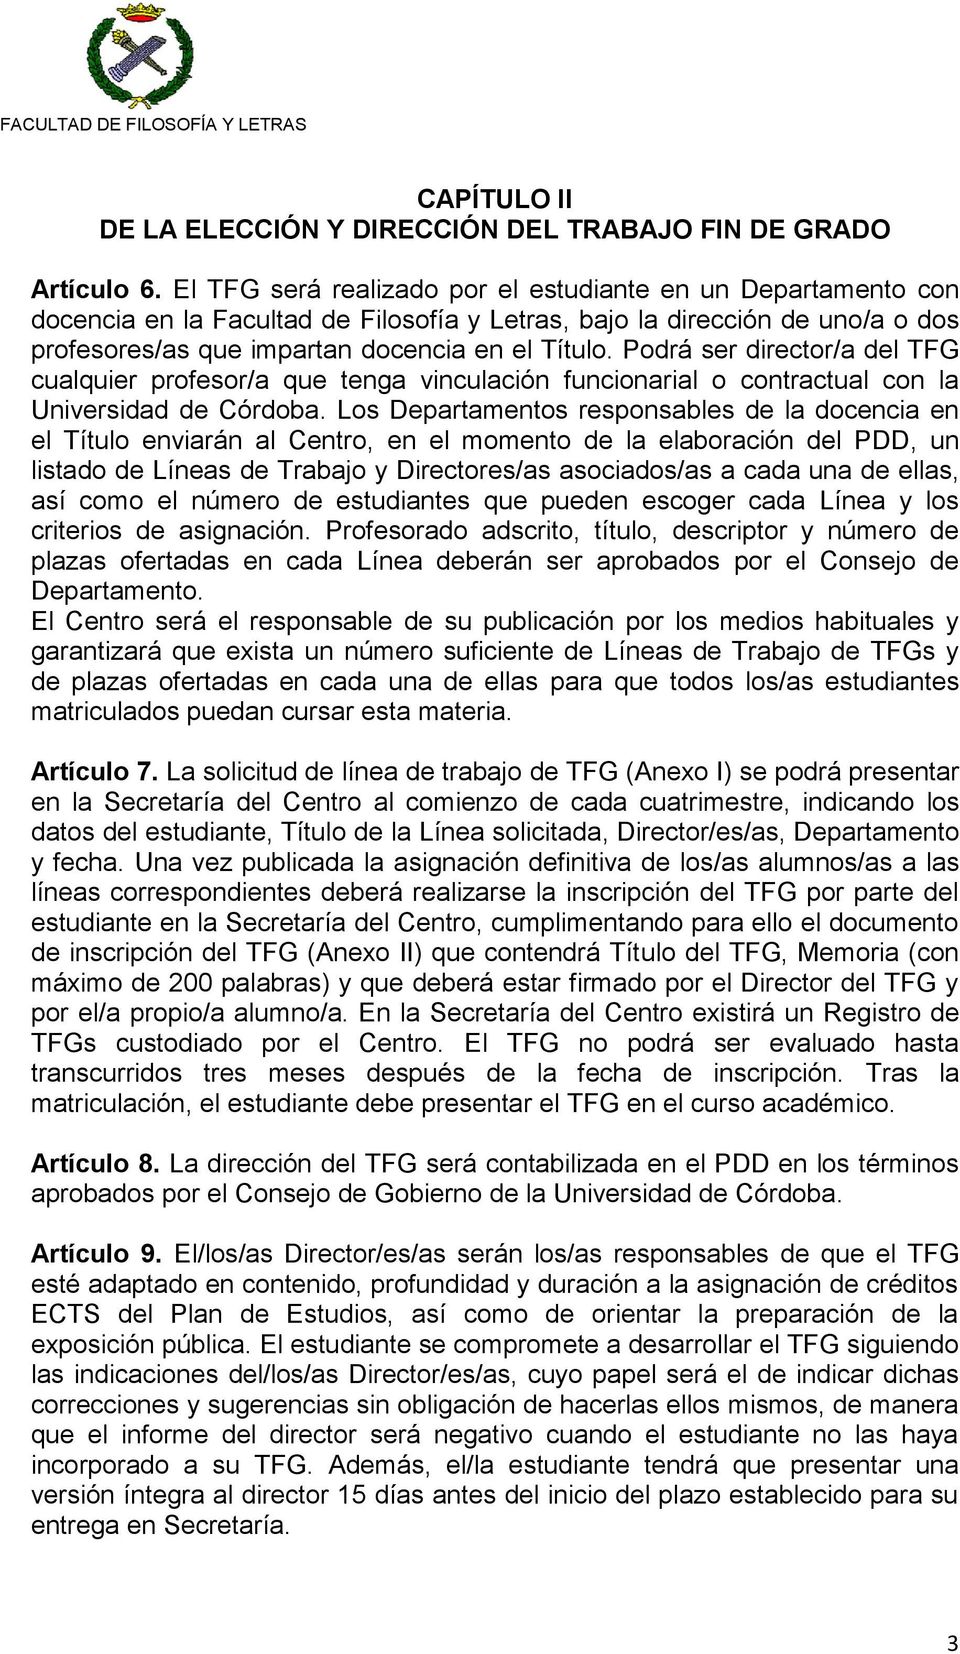 Podrá ser director/a del TFG cualquier profesor/a que tenga vinculación funcionarial o contractual con la Universidad de Córdoba.